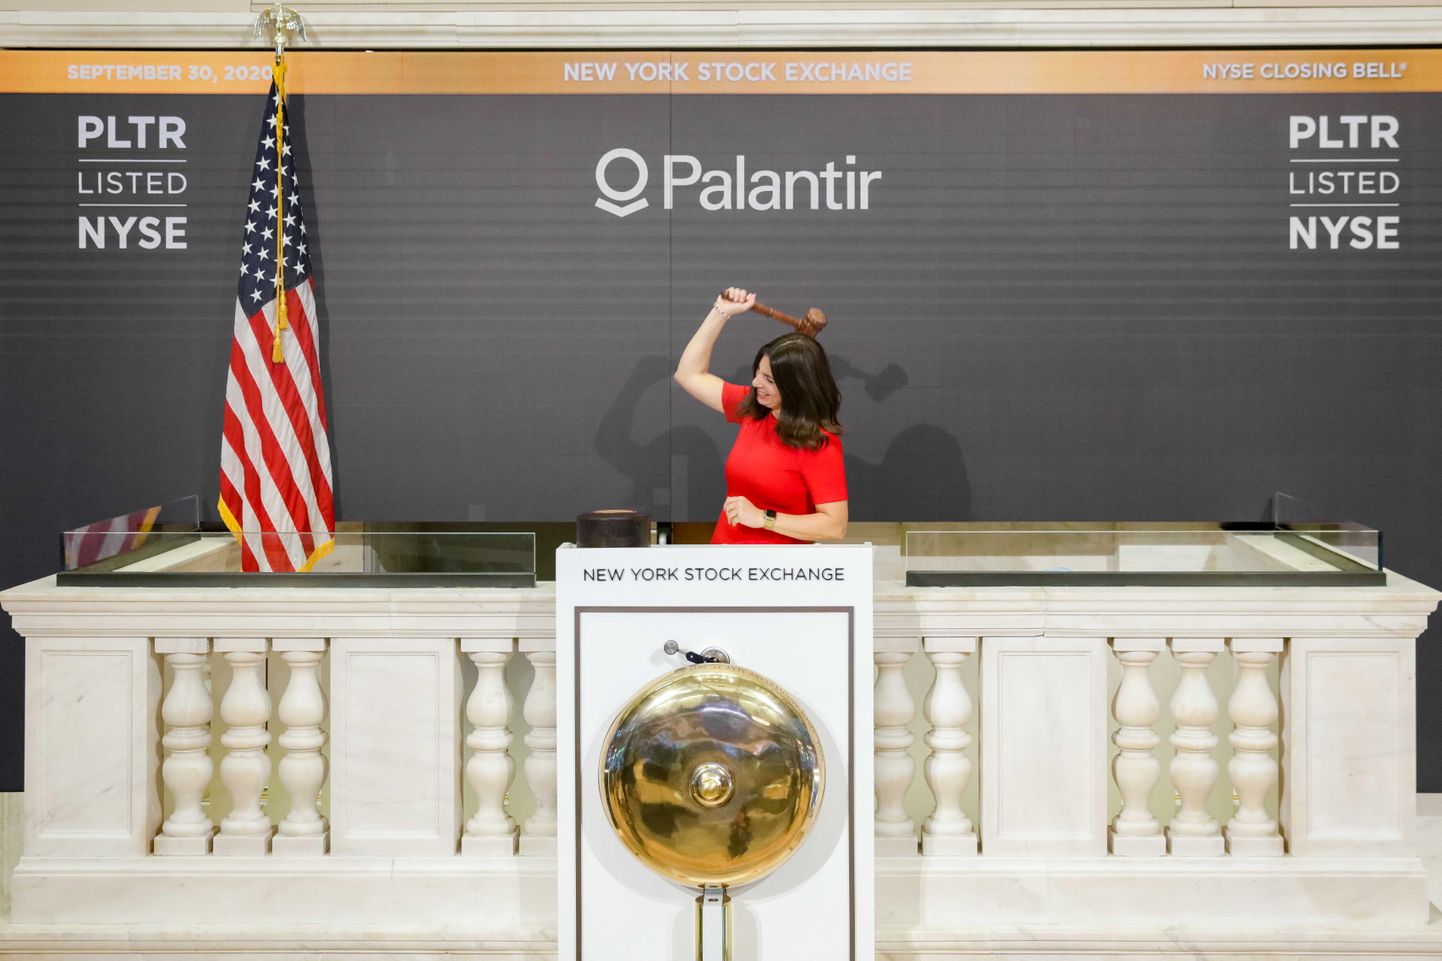 New Yorgi börsi juht lööb Palantirile börsikella